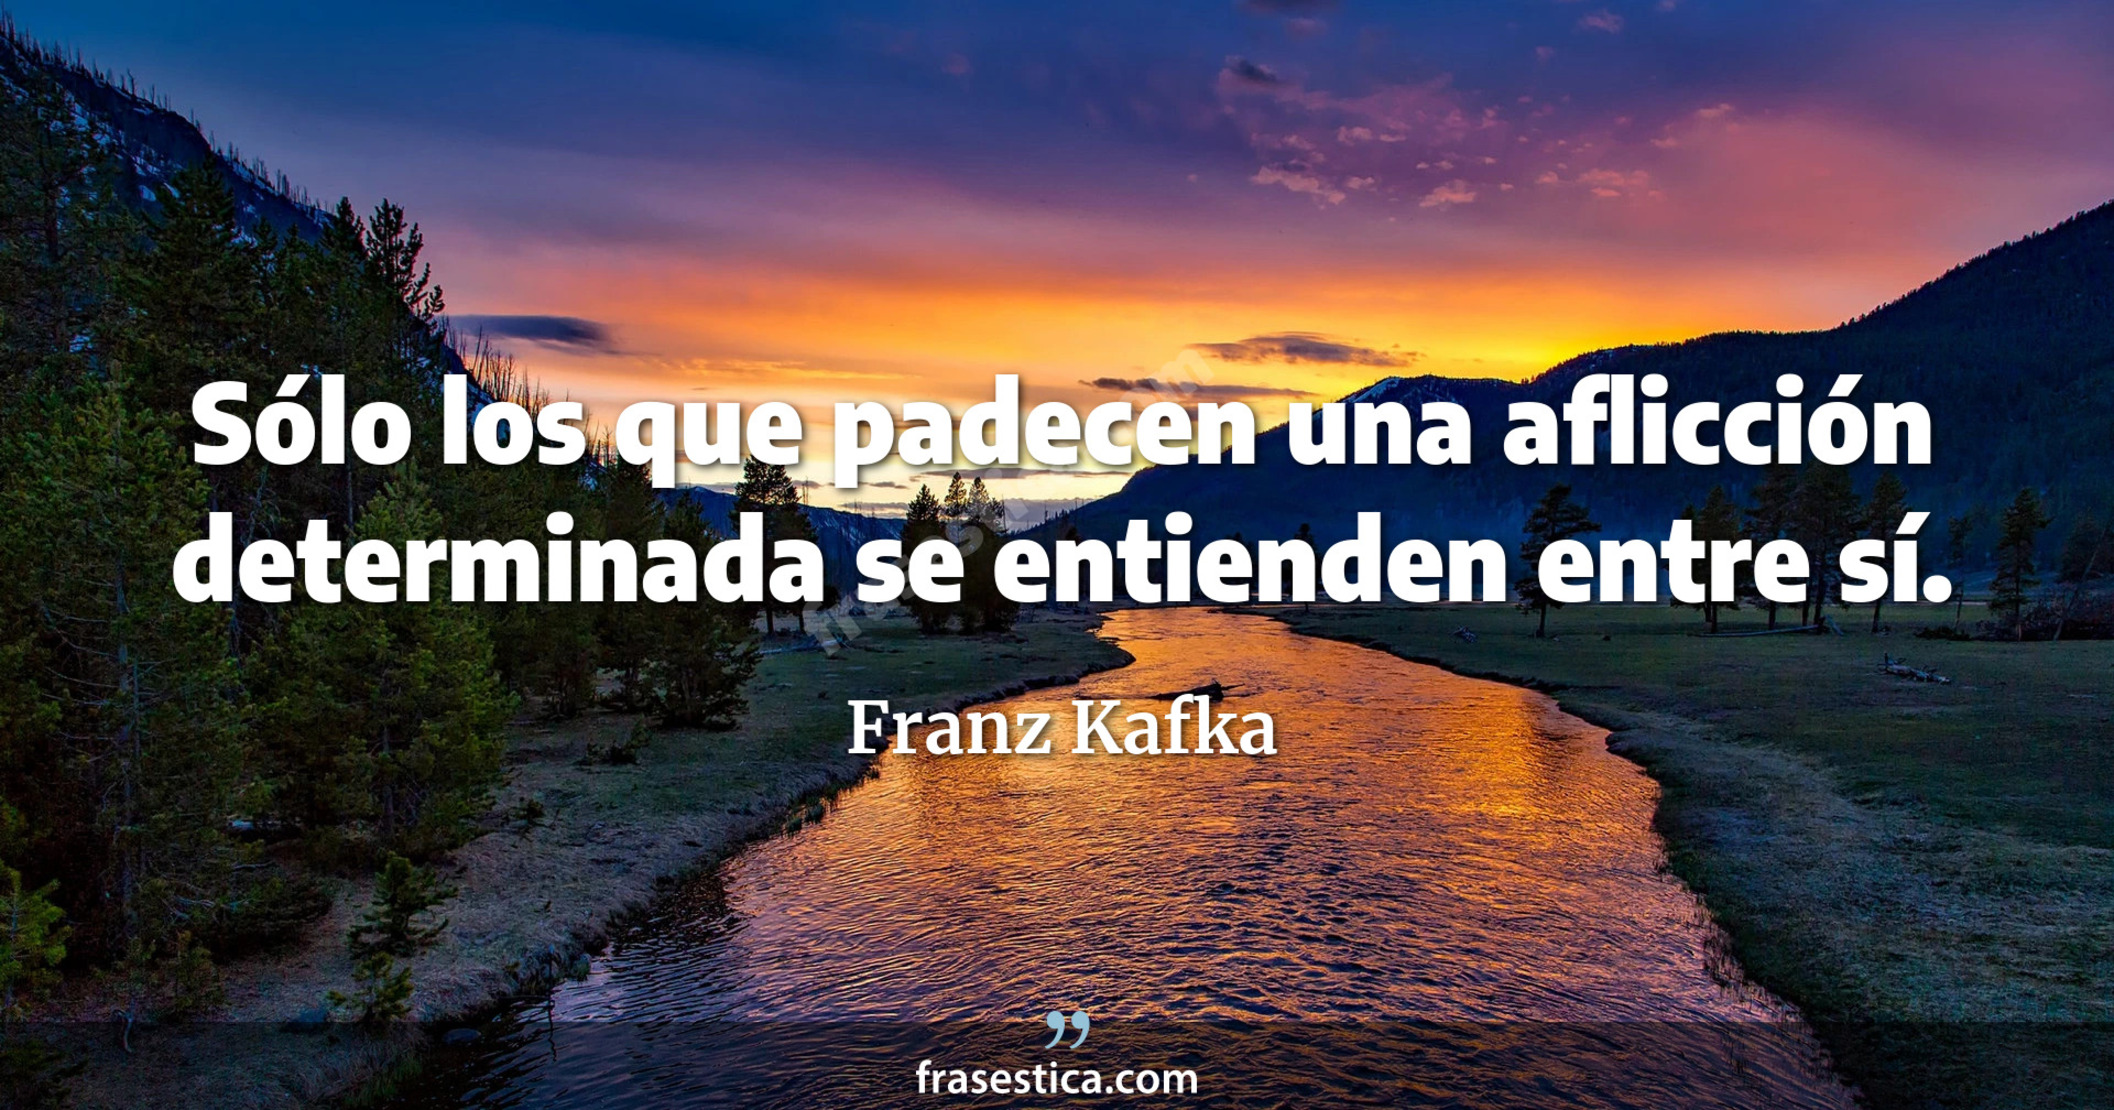 Sólo los que padecen una aflicción determinada se entienden entre sí. - Franz Kafka